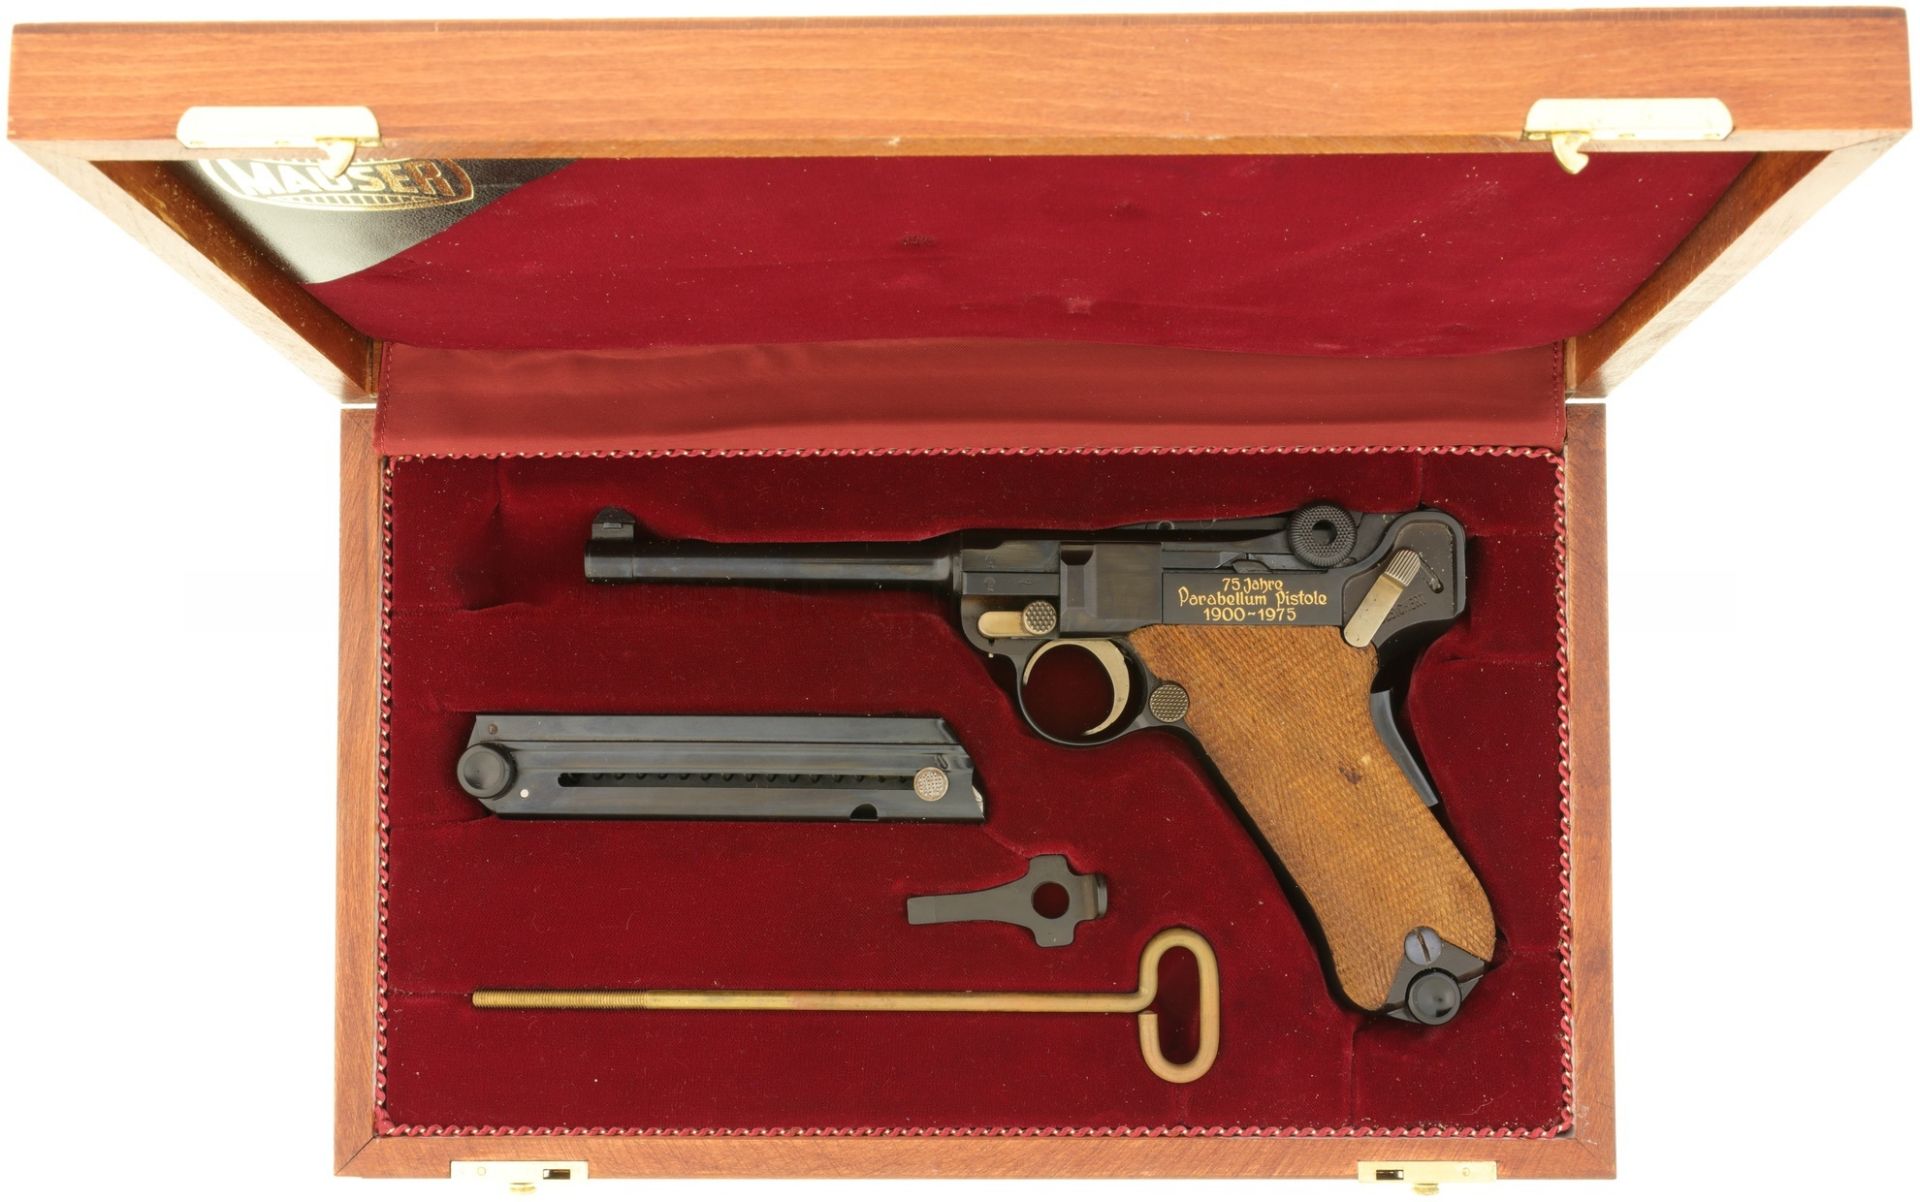 Jubiläumspistole Mauser Parabellum 1900-1975, Kal. 7.65mmPara